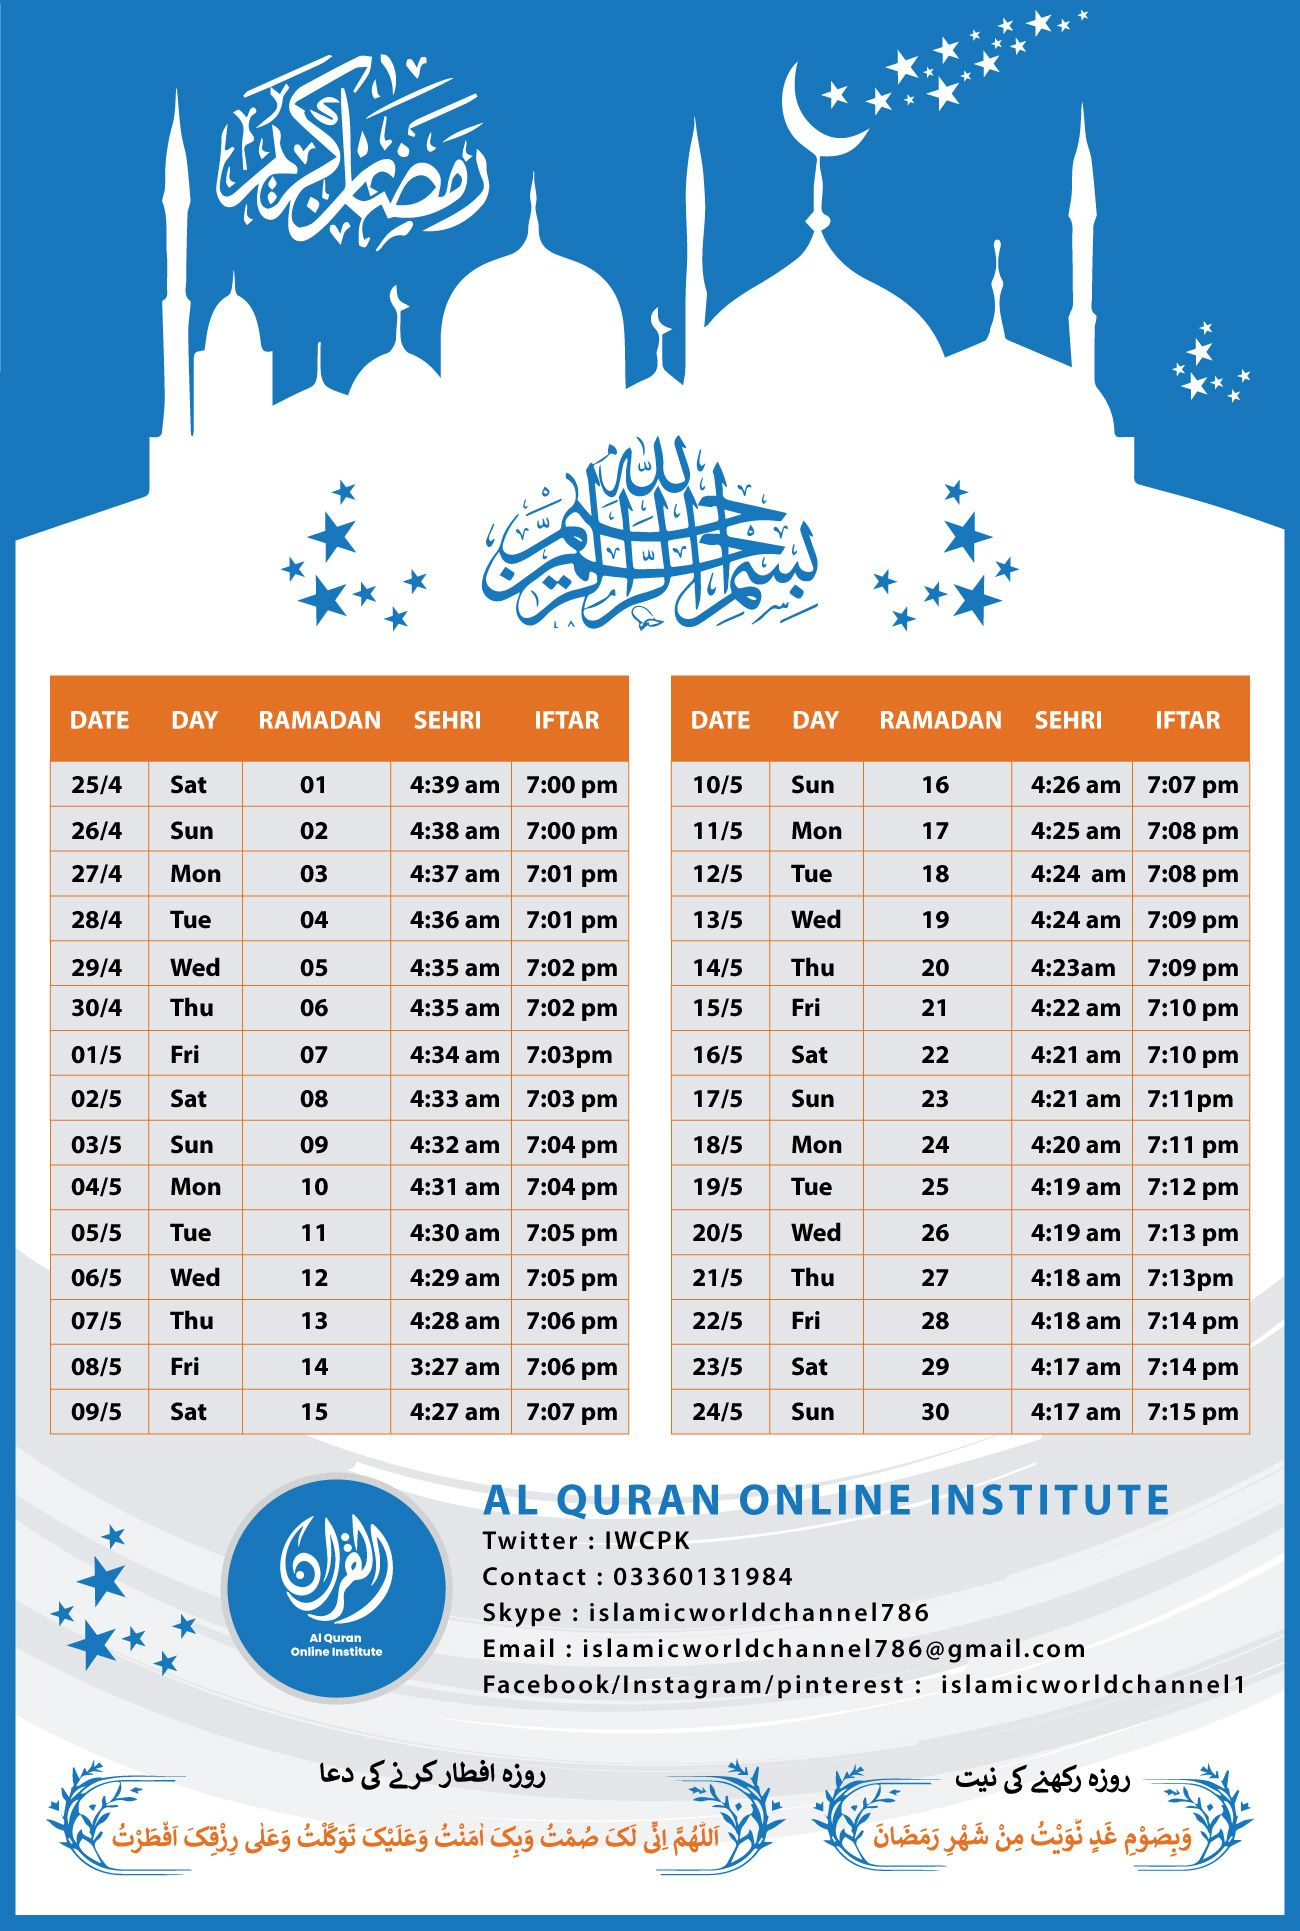 Ramadan 2020 Time Table India Image - Ramadom